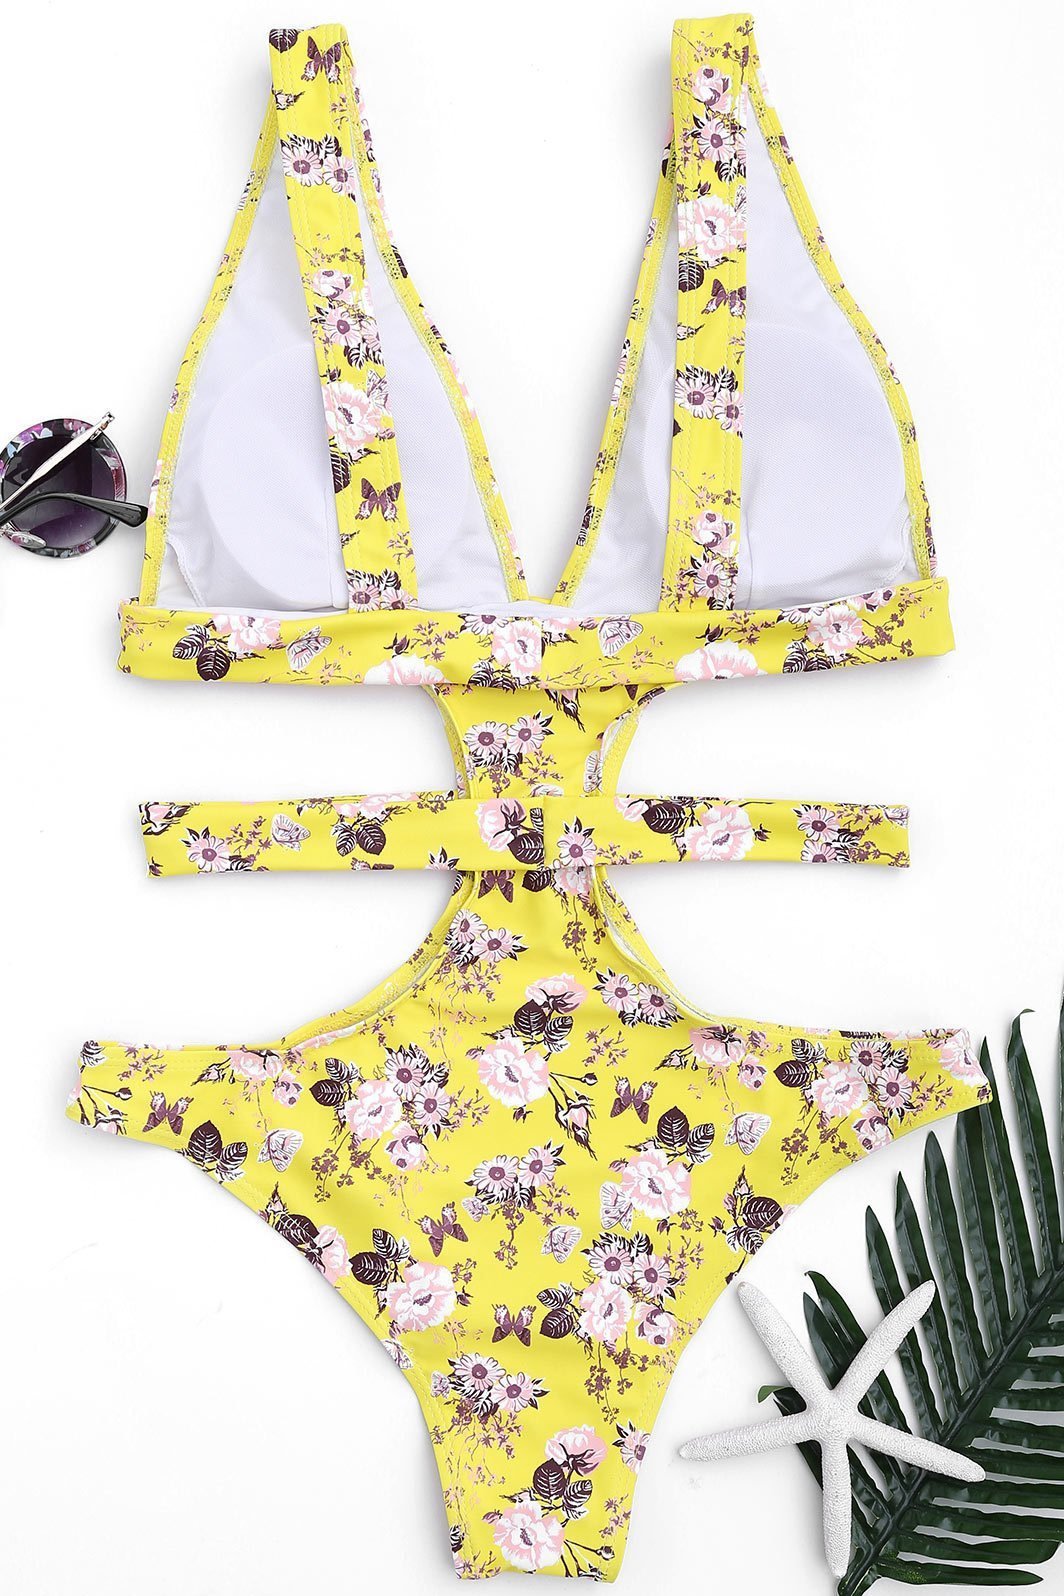 Yellow Cutout Plunging Floral Print Bandage Cheeky Sexy Monokini Swimwear